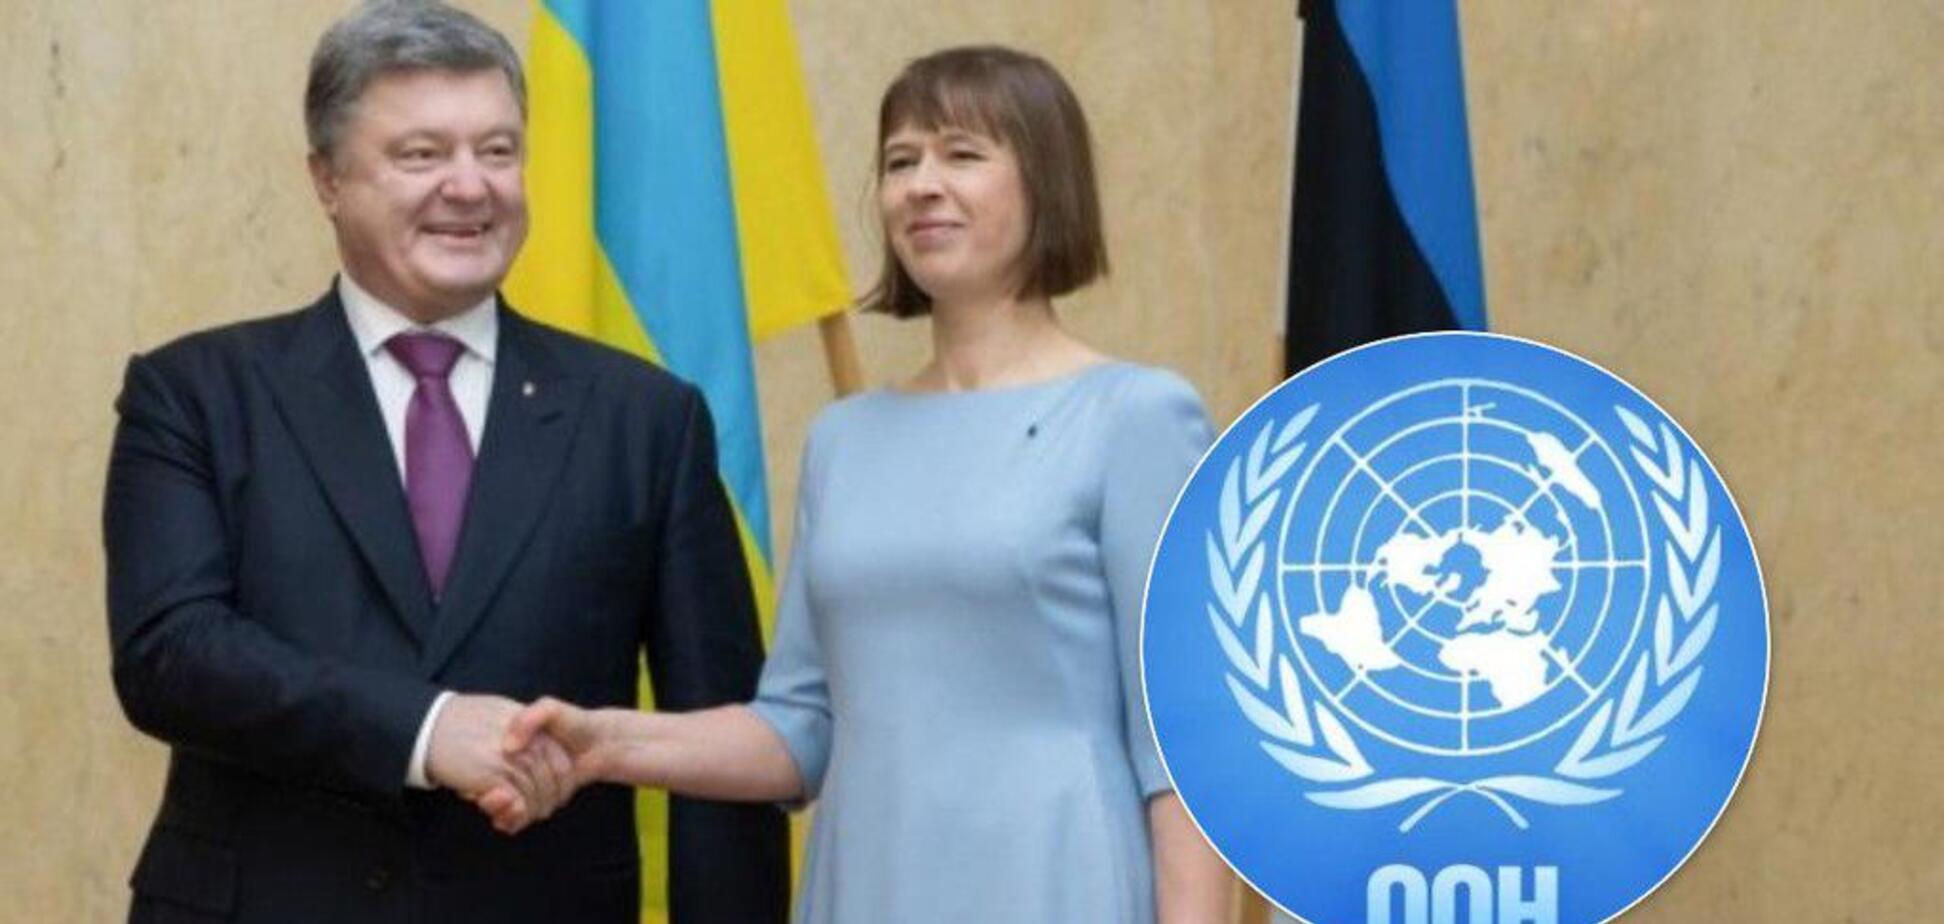 'Называйте вещи своими именами — в Европе идет война!' Президент Эстонии мощно поддержала Украину в ООН